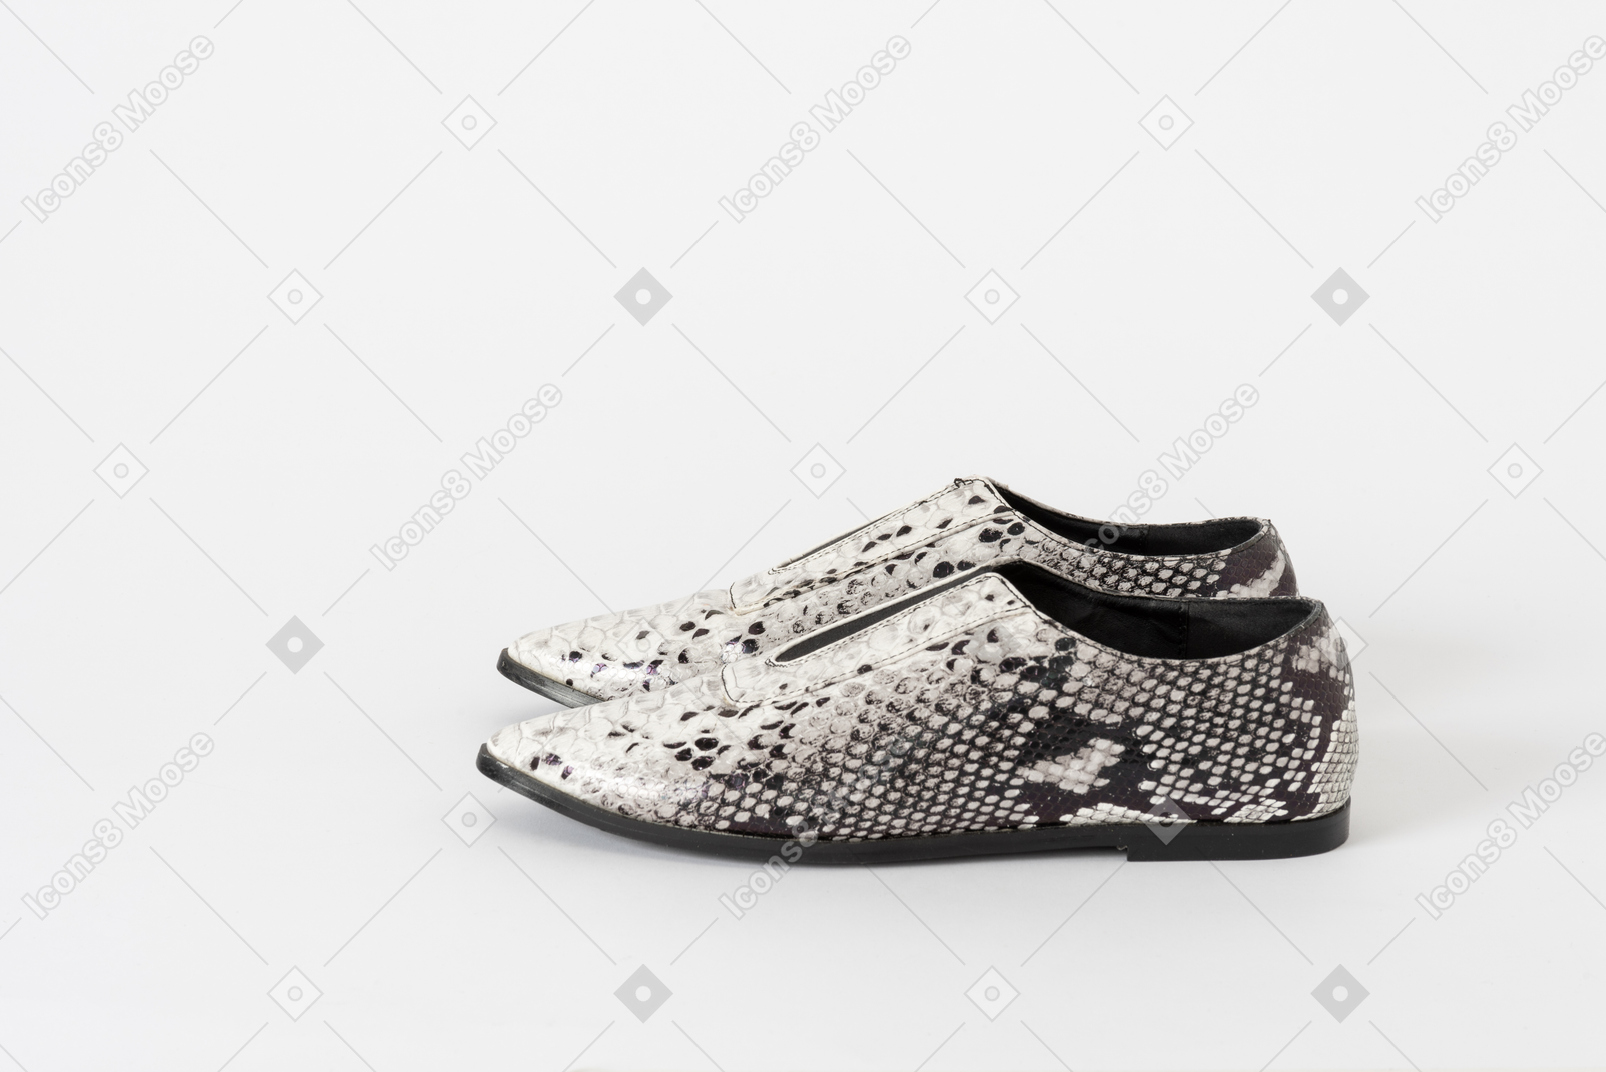 Une paire de chaussures plates en peau de serpent blanche et noire